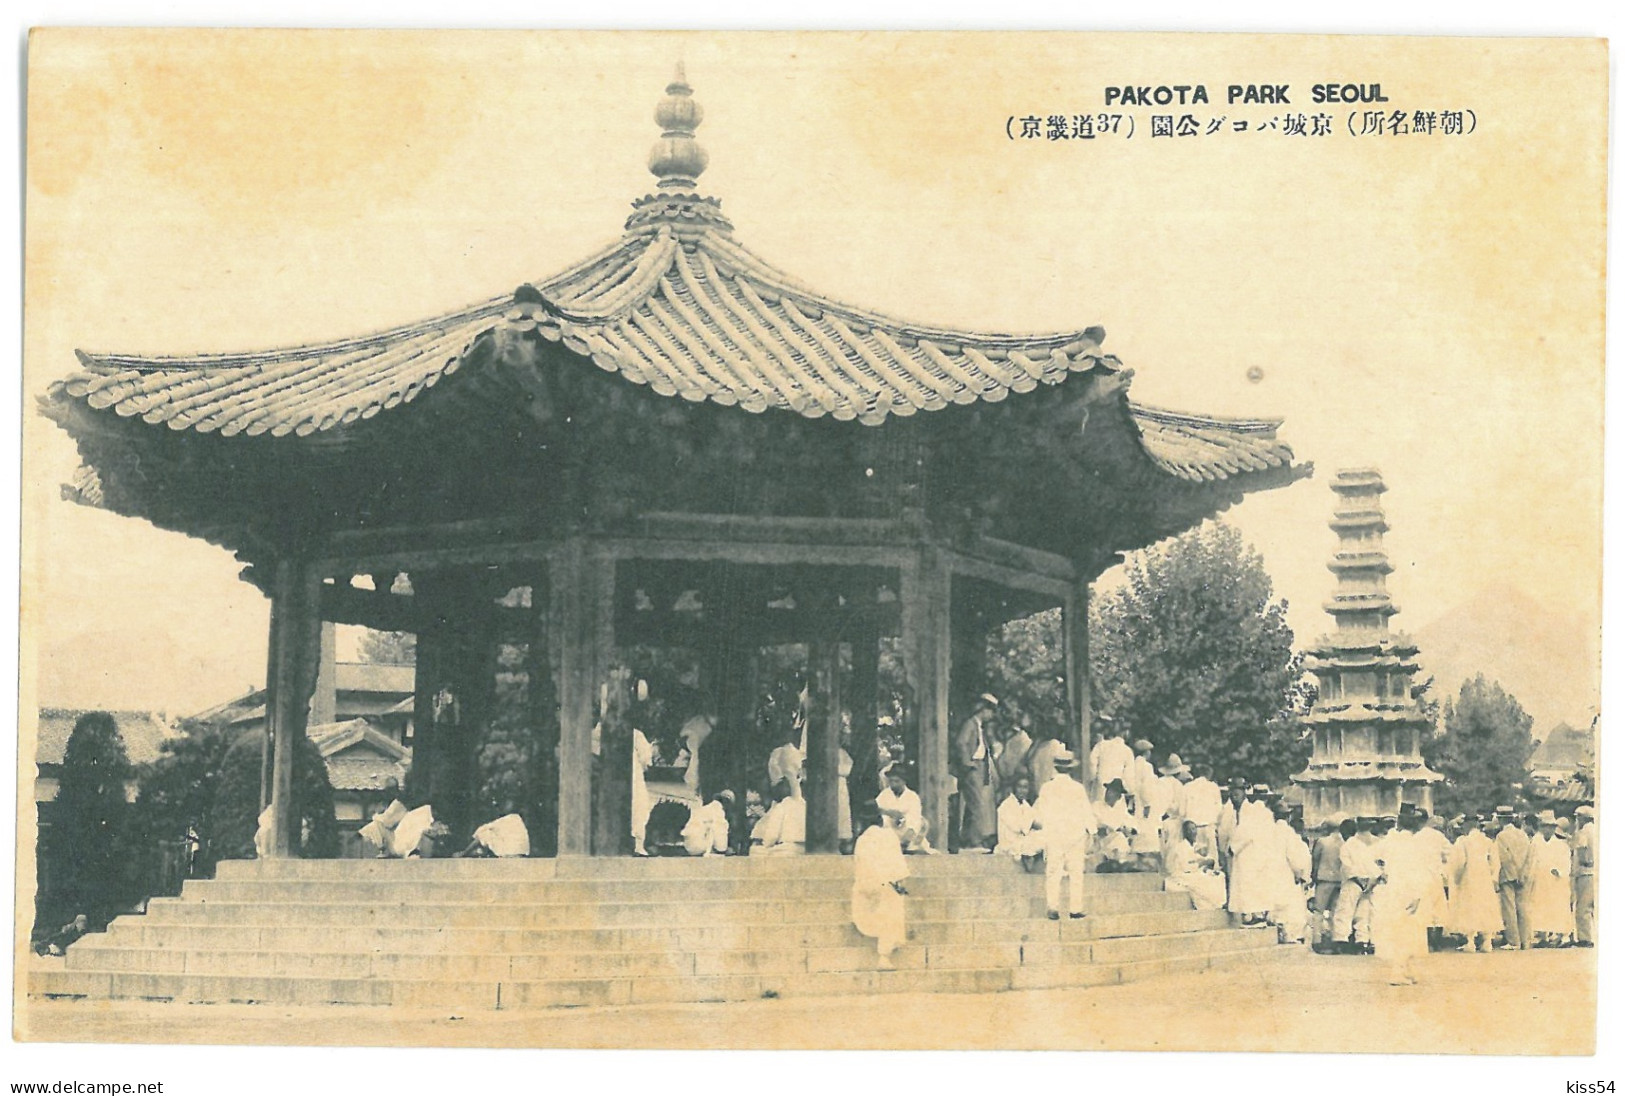 KOR 4 - 17816 SEOUL, Pakota Park, Korea - Old Postcard - Unused - Korea (Zuid)